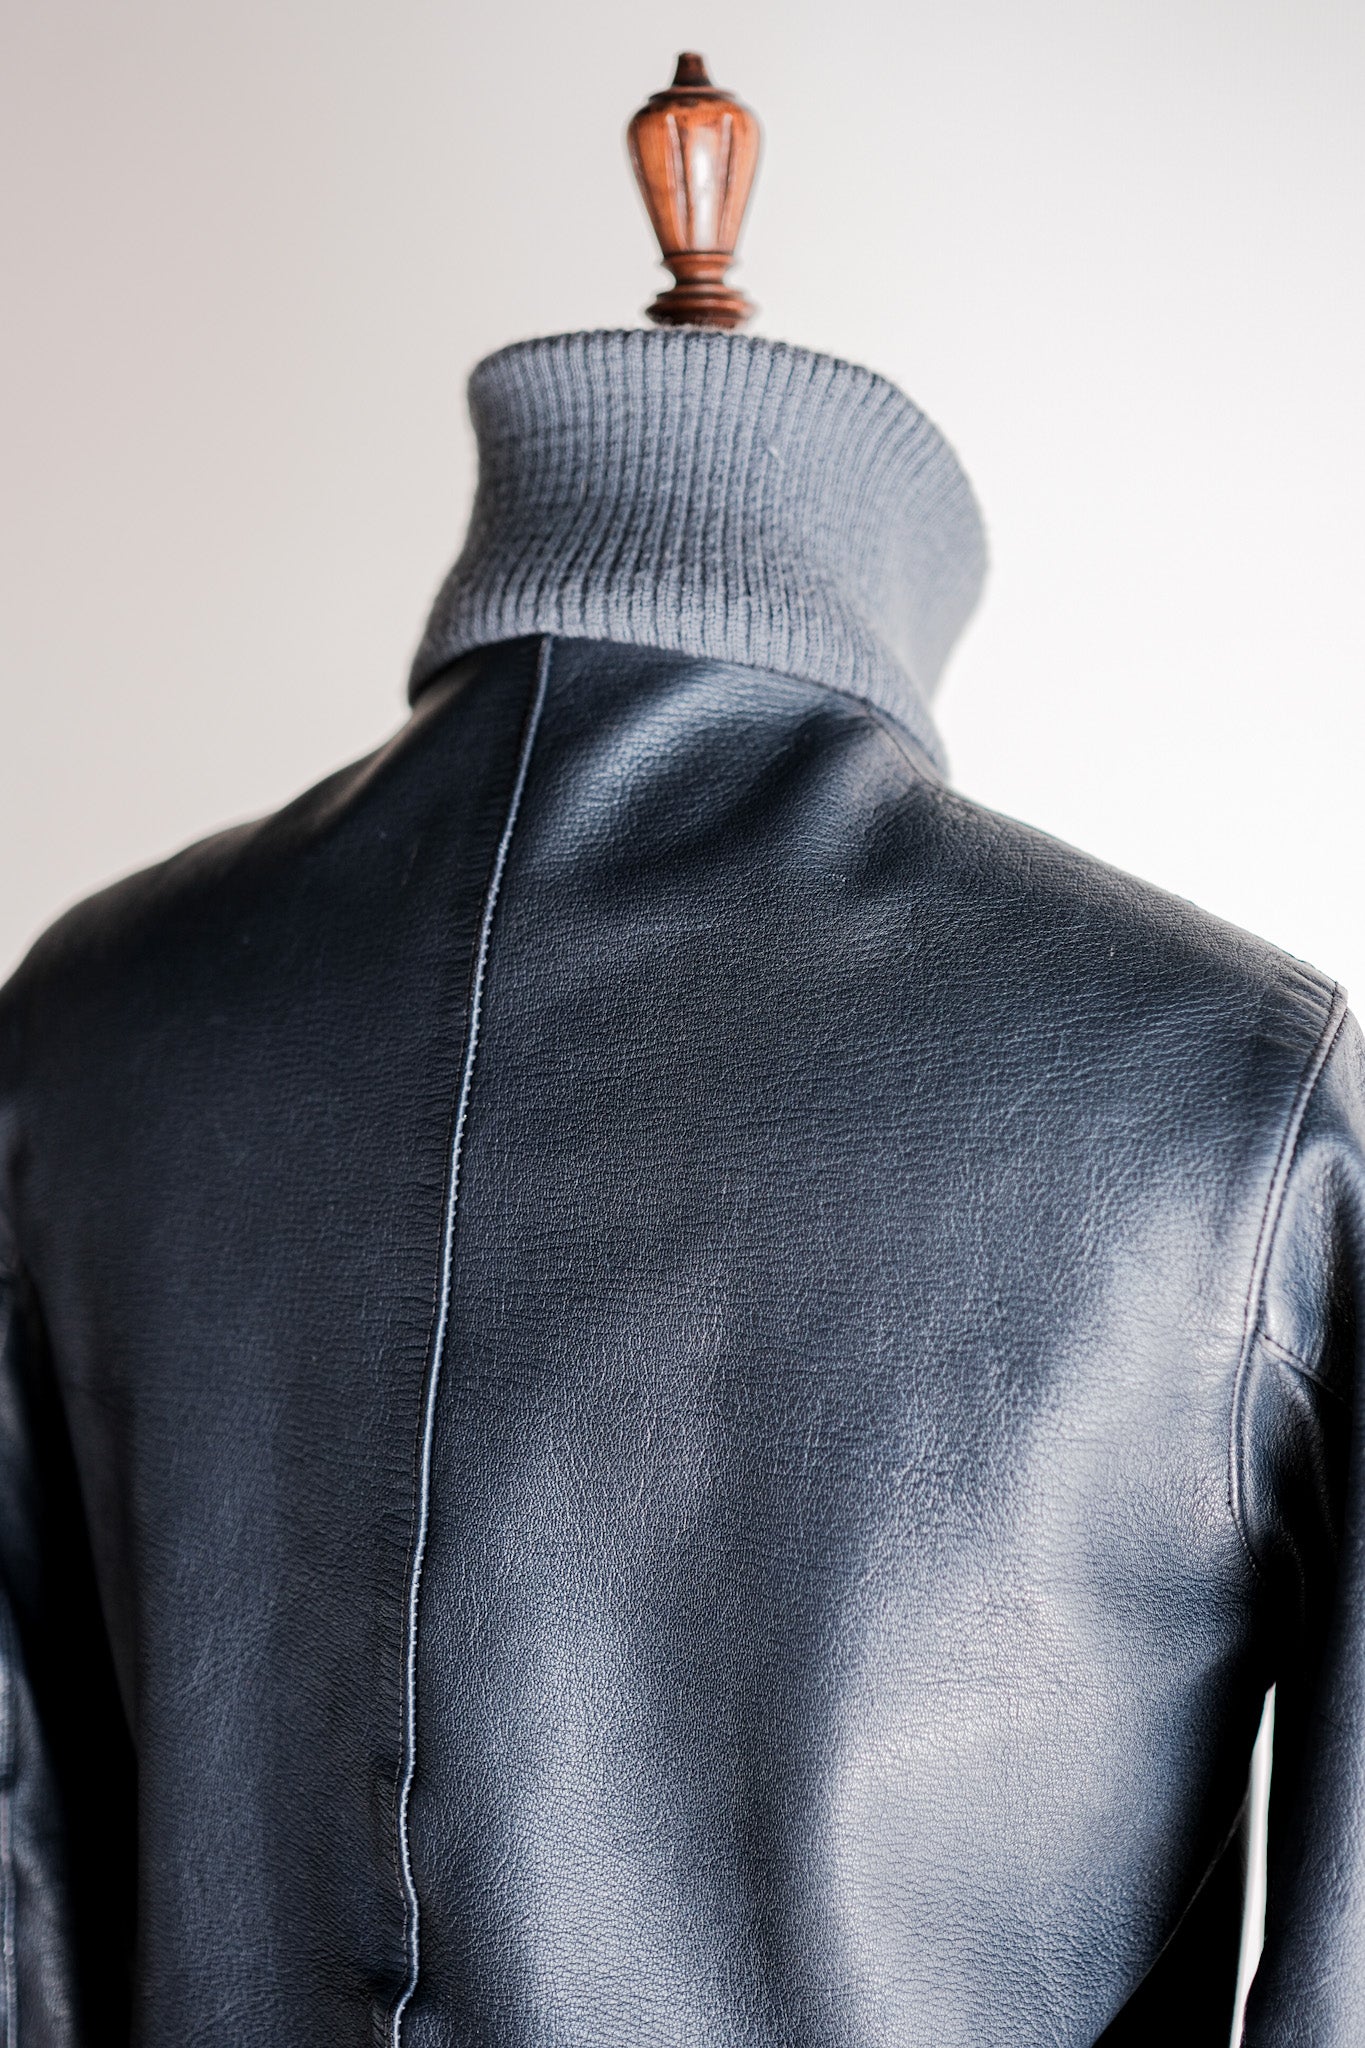 [~ 60 년대] 서독 에어스 타입 파일럿 가죽 재킷 "초기 유형"